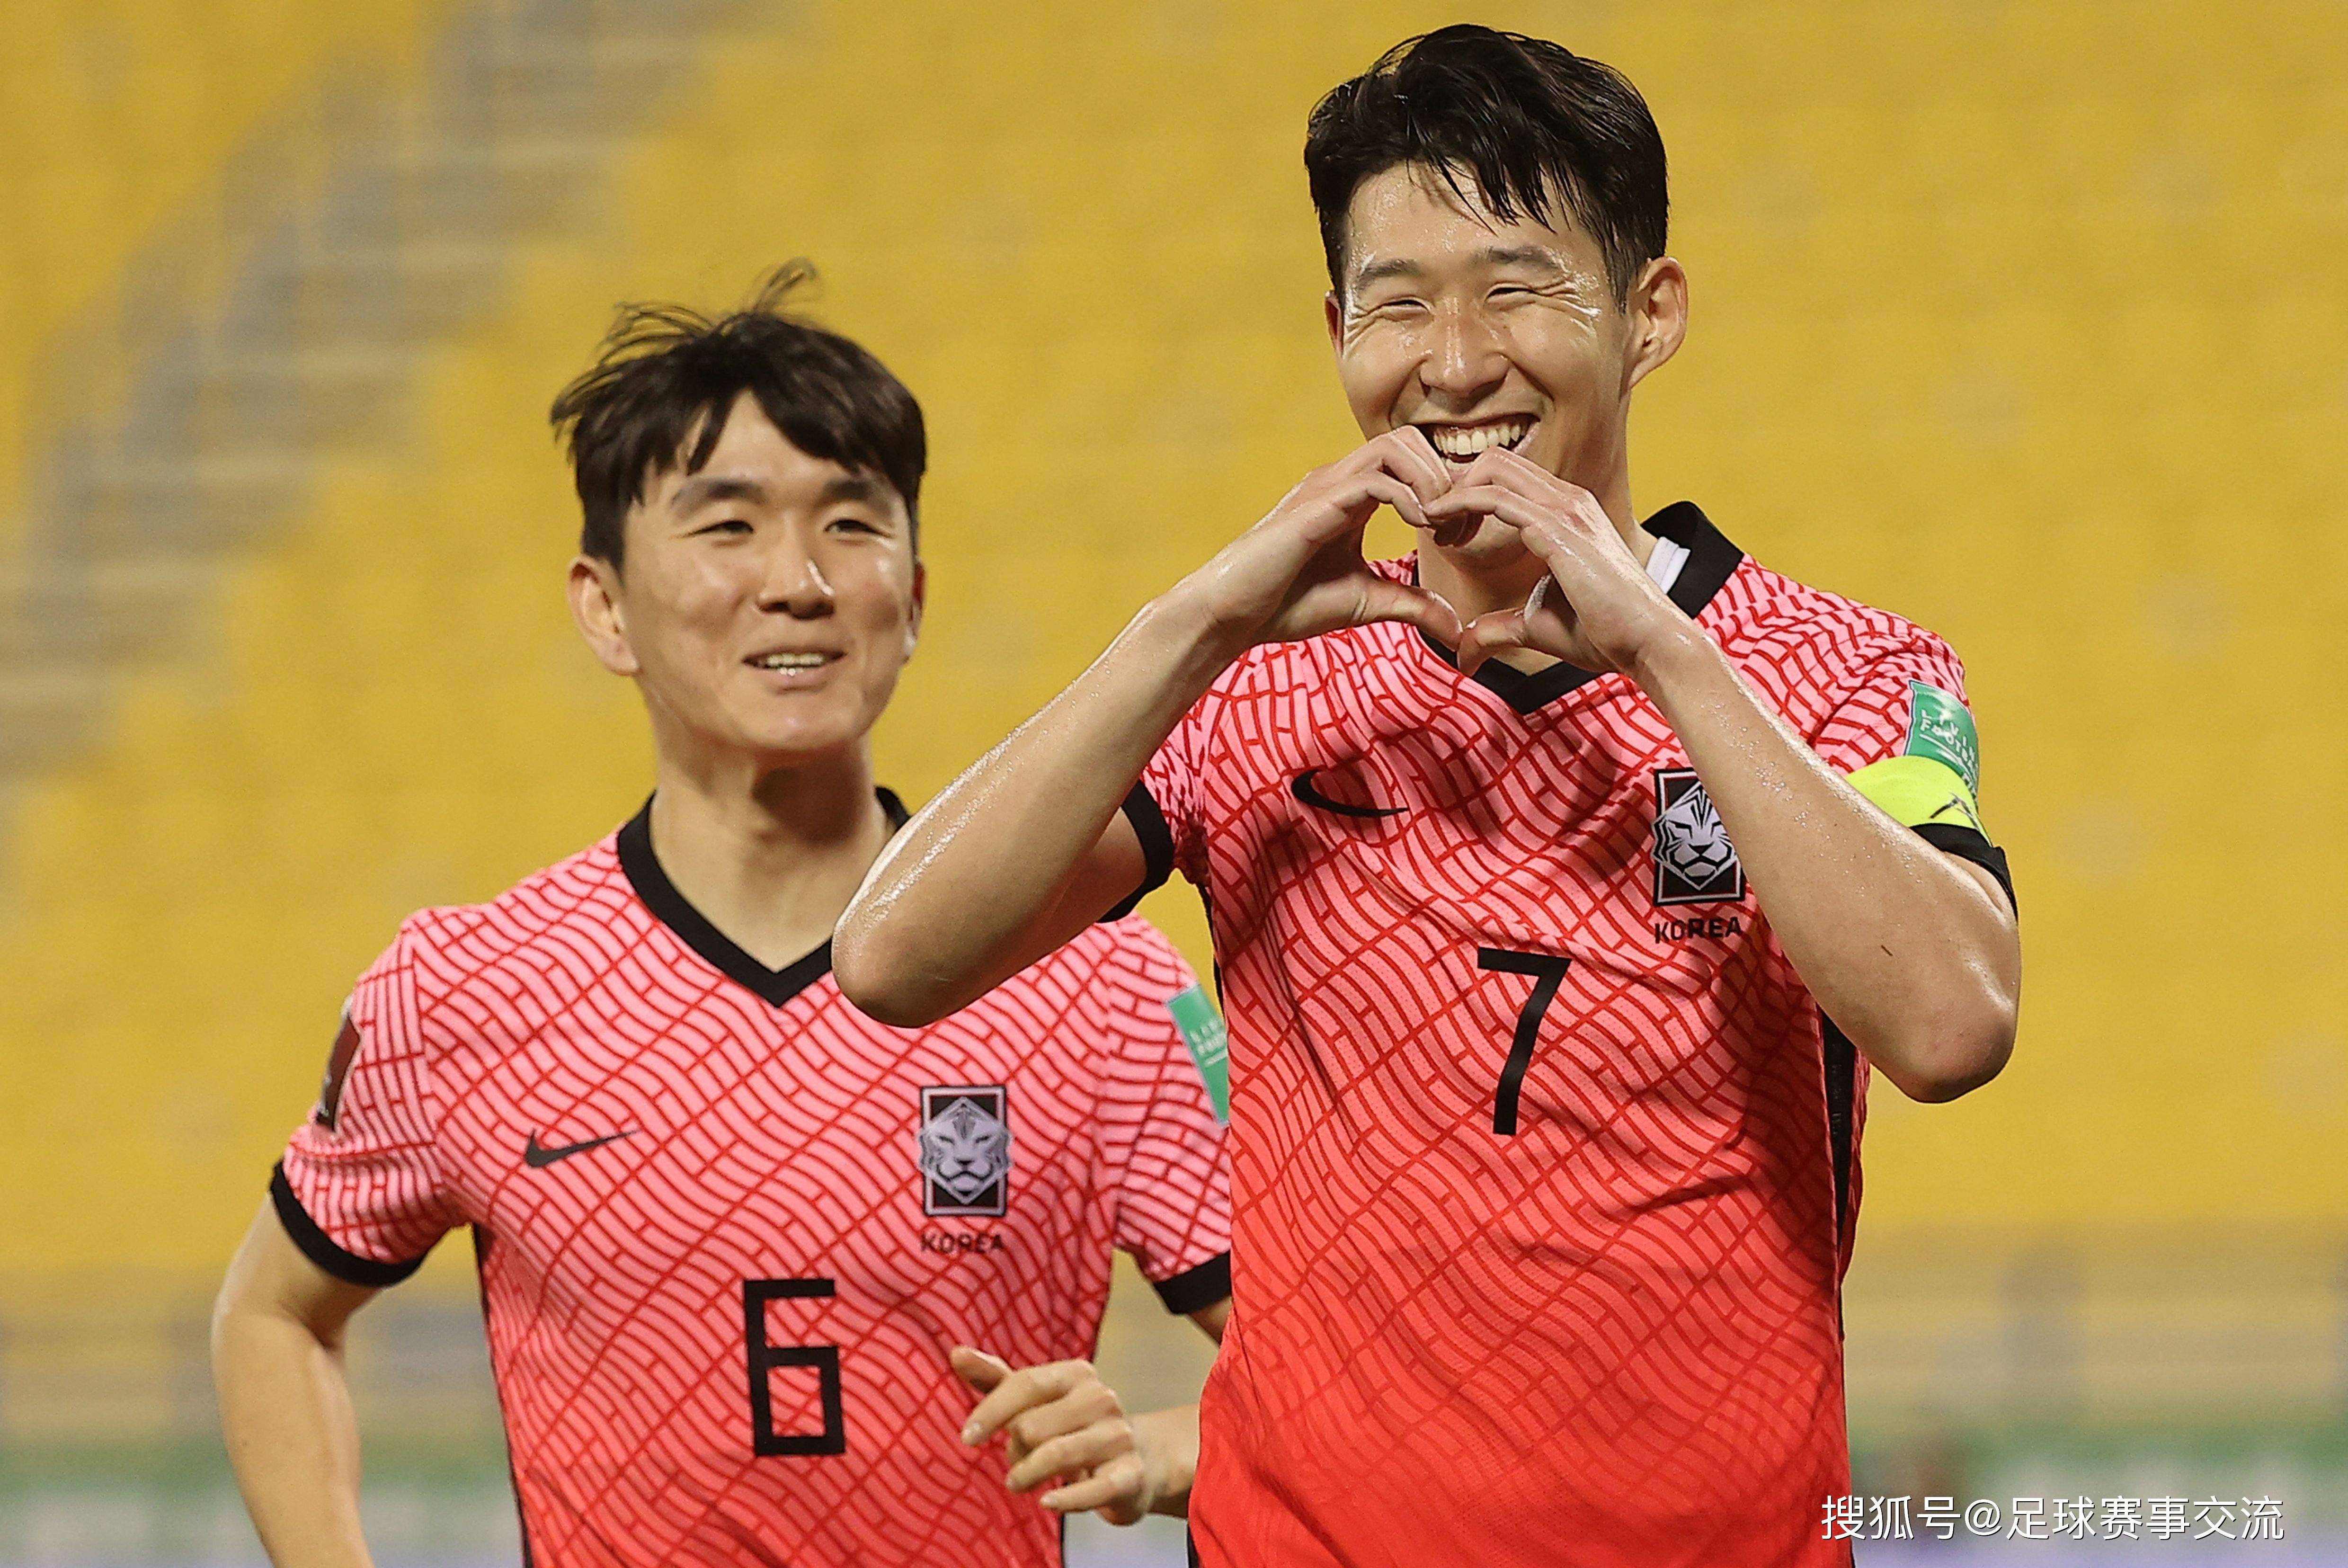 【168sports】亚洲杯：塔吉克斯坦对阵约旦 澳大利亚对阵韩国